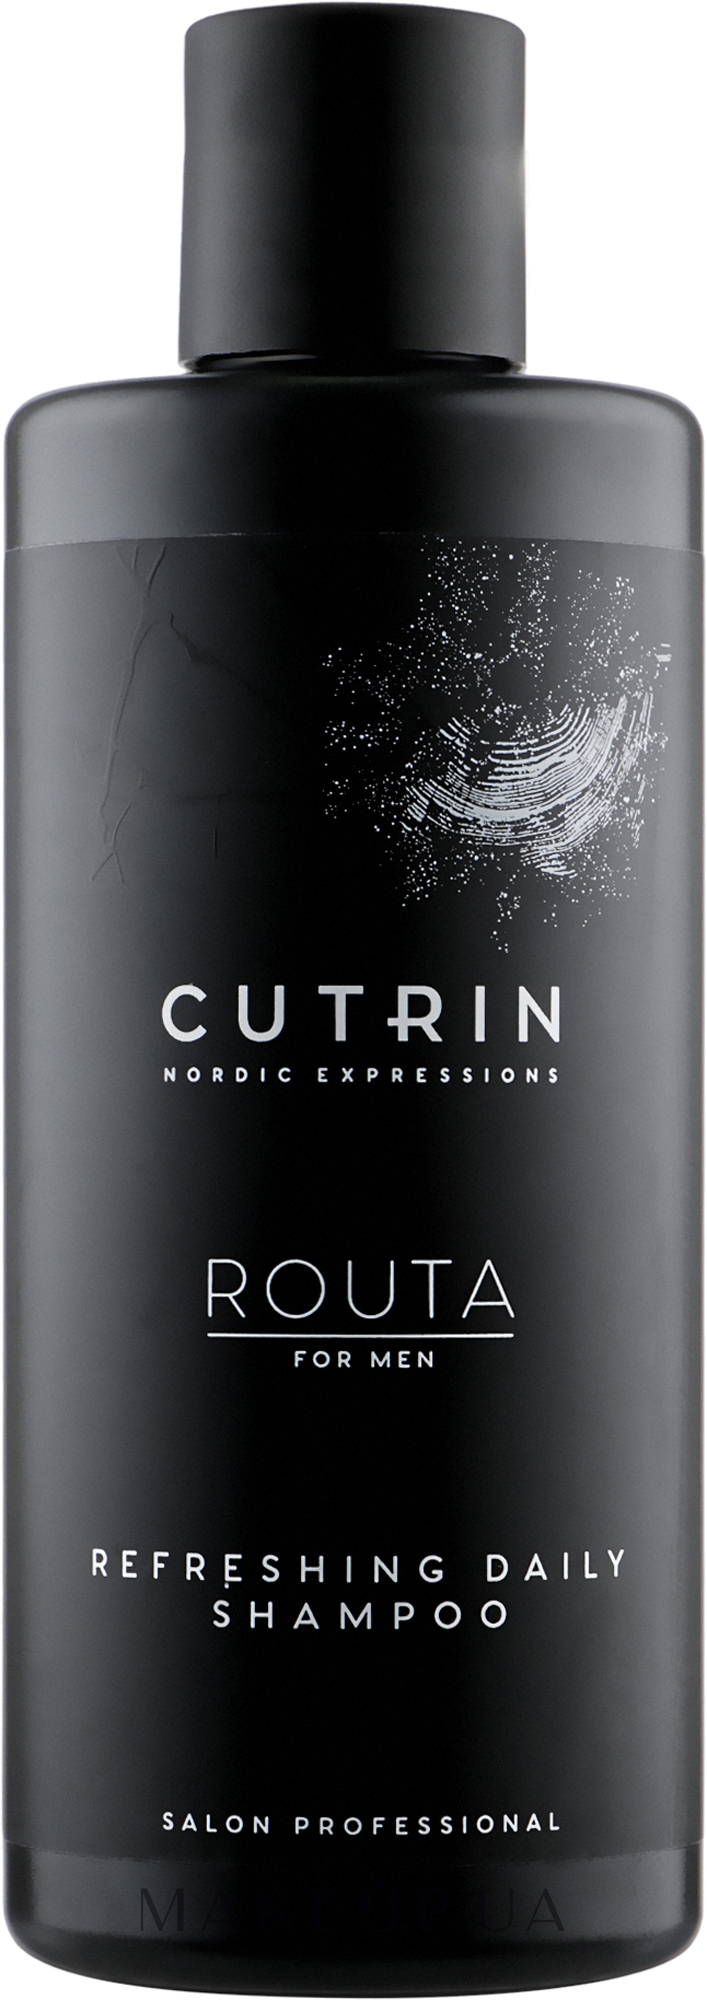 Освіжальний щоденний шампунь для чоловіків - Cutrin Routa Refreshing Daily Shampoo — фото 250ml